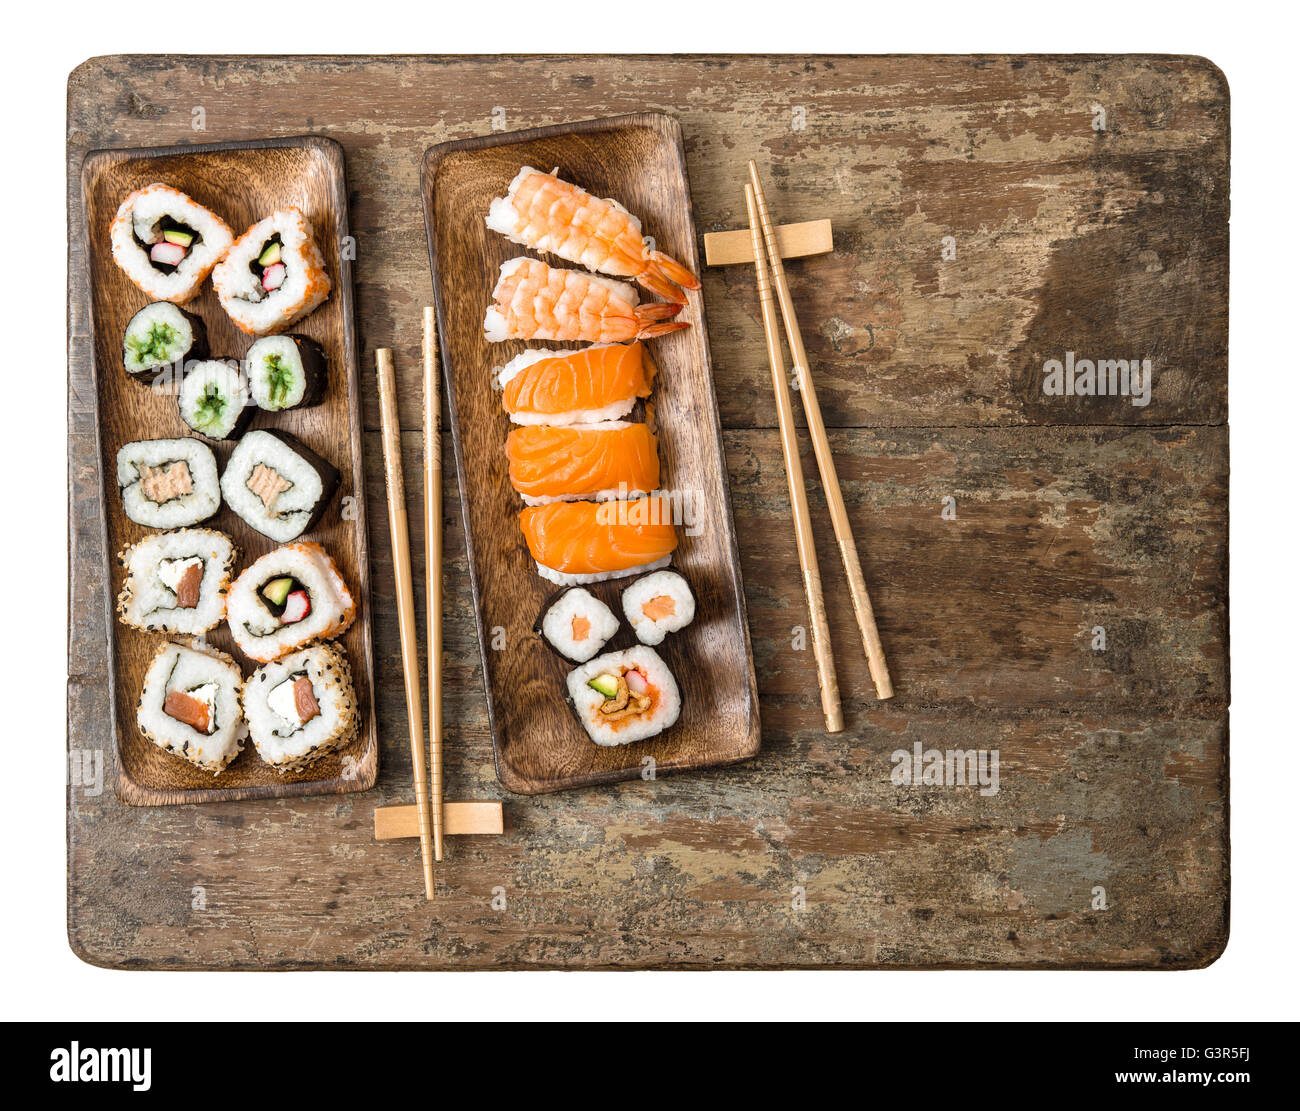 La comida tradicional japonesa. Rollos de sushi, maki y nigiri sobre fondo de madera de estilo rústico. Mariscos Foto de stock